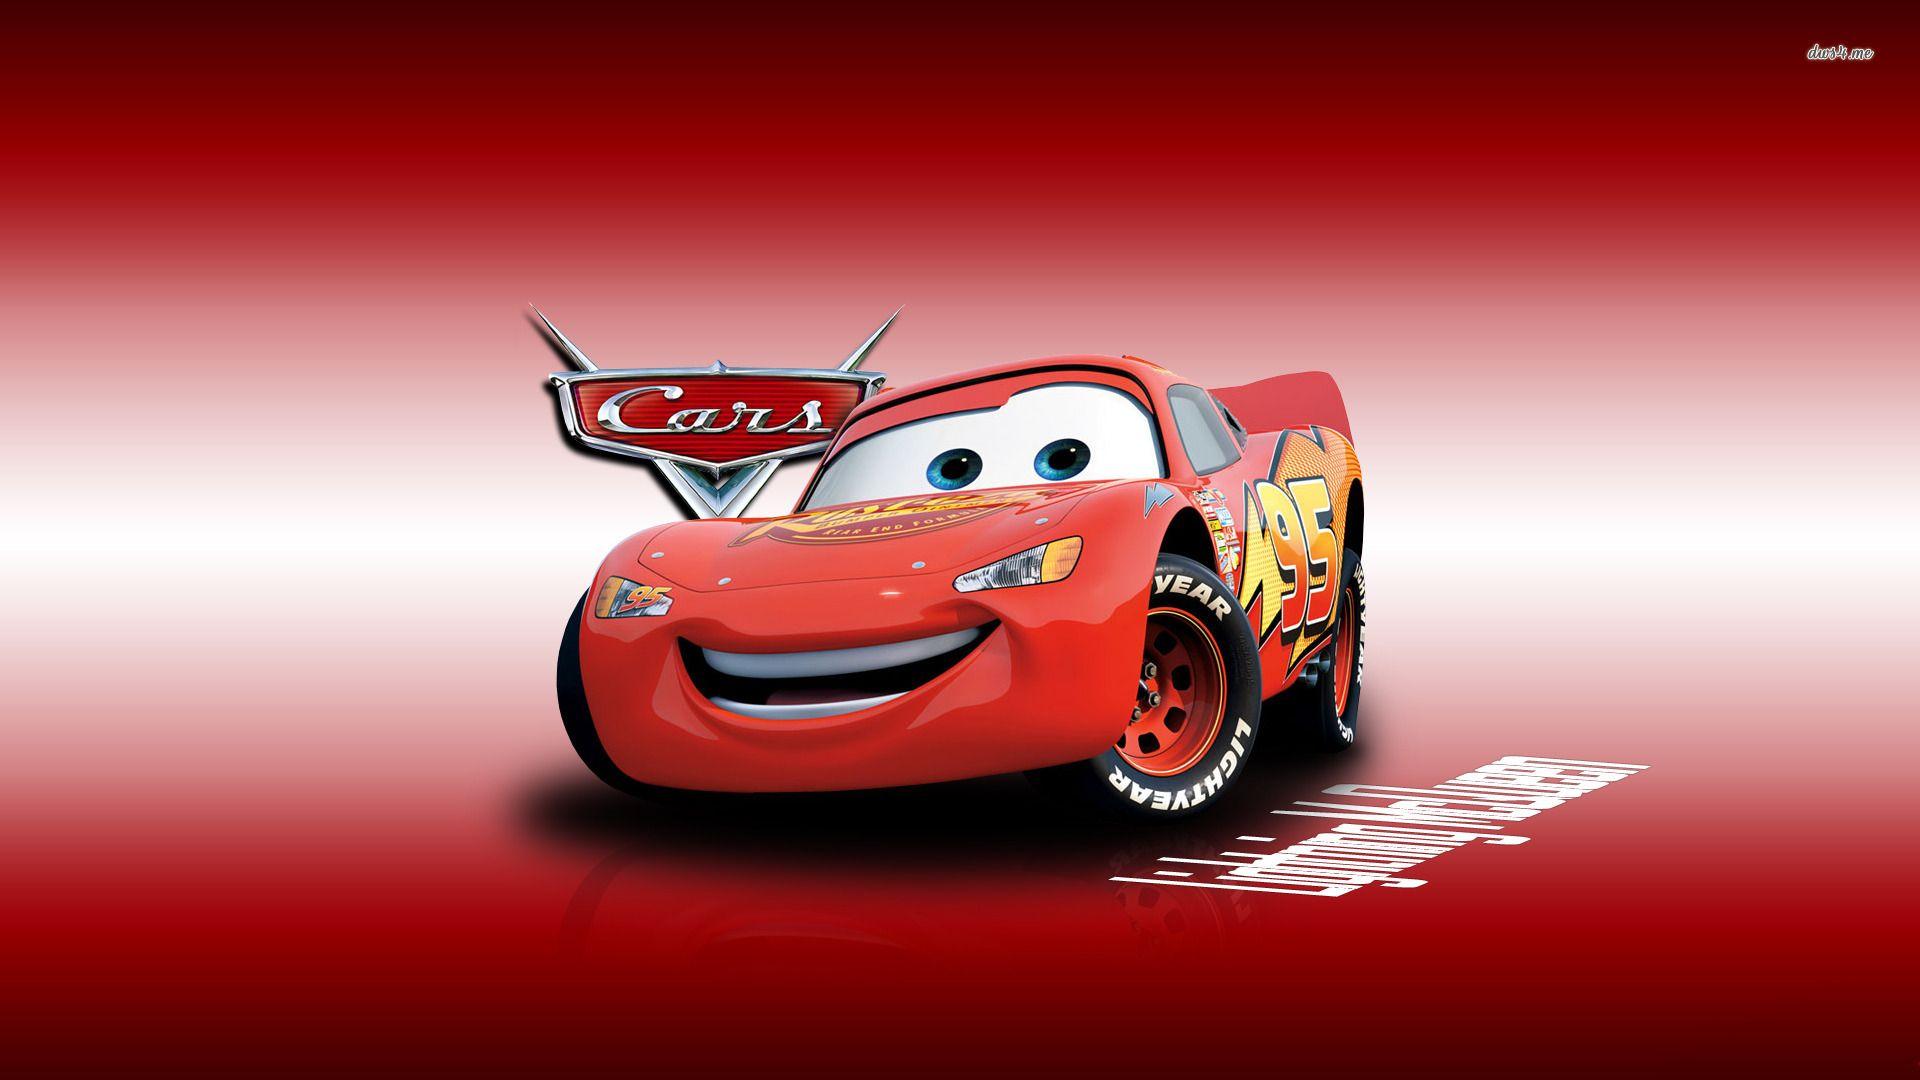 Wallpaper Cars Cartoon, Cars Cartoon Full Full HD Quality